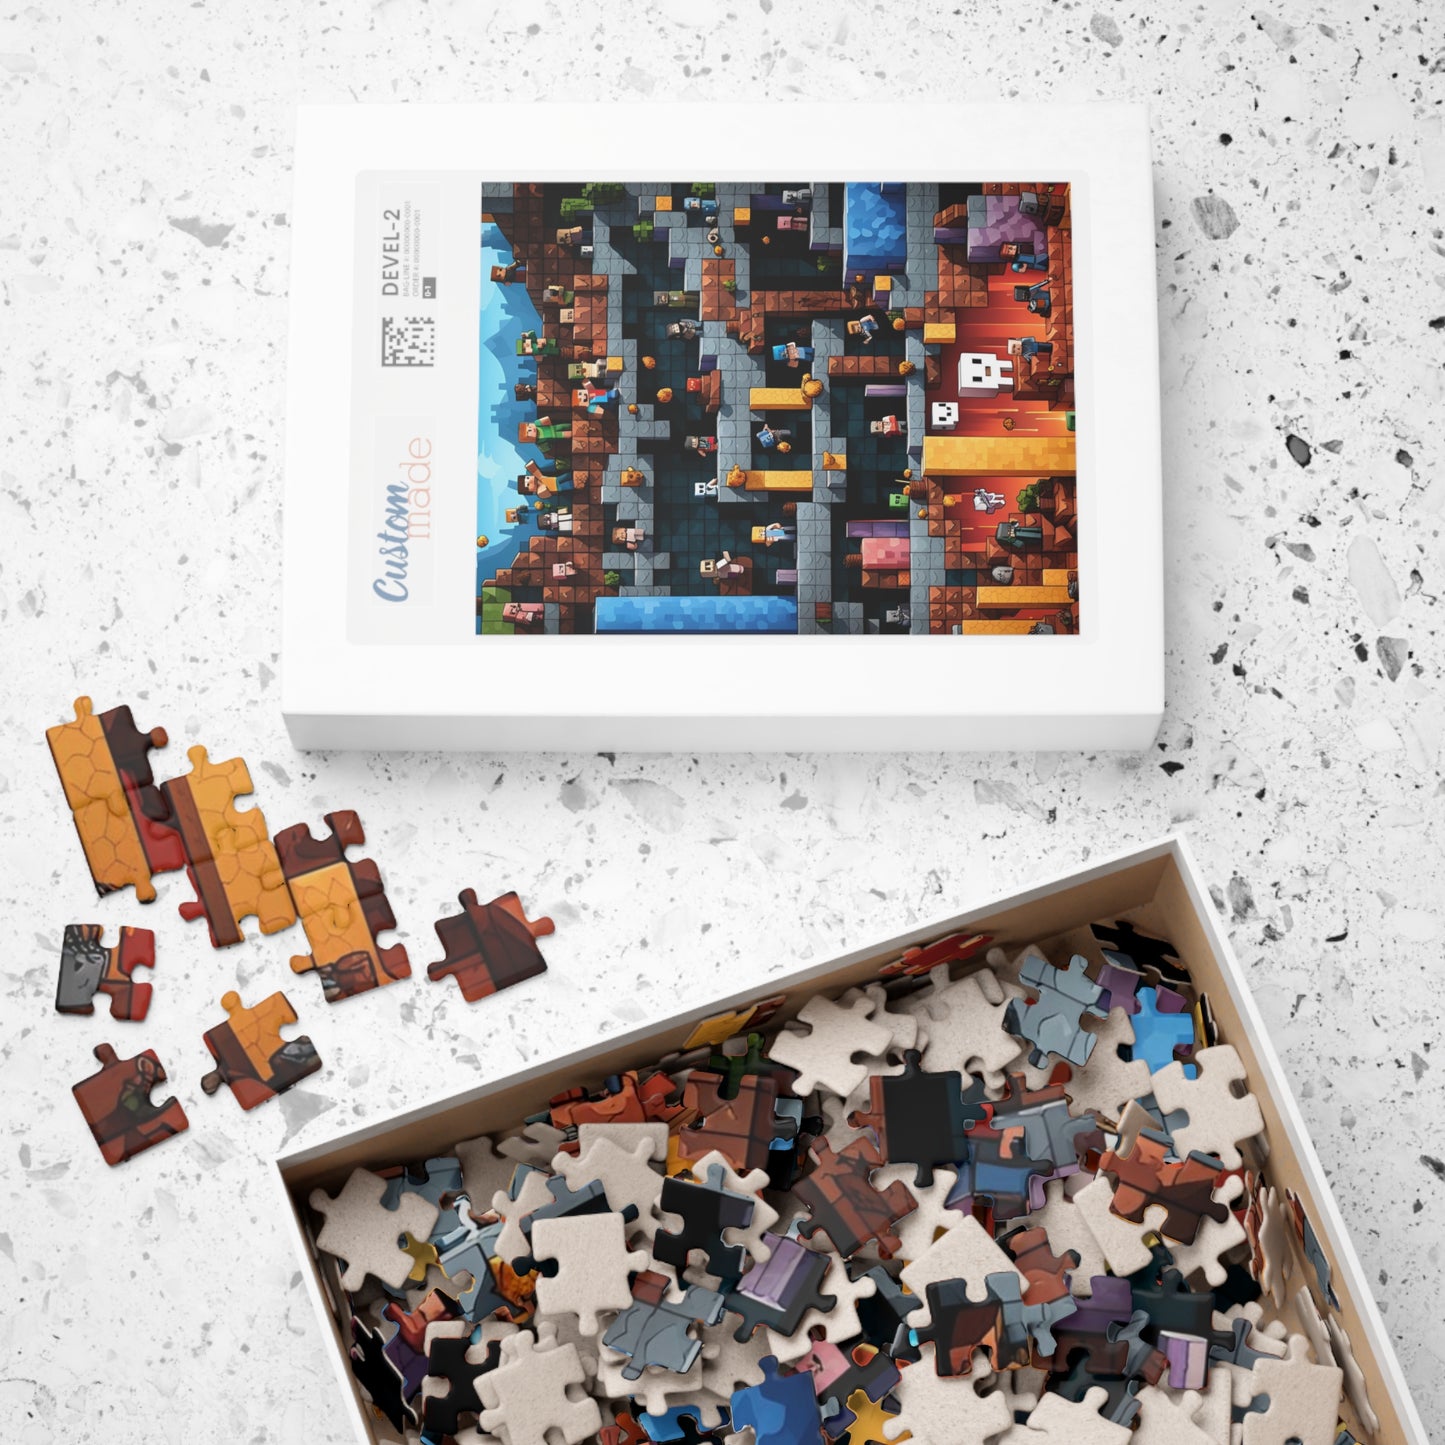 Minecraft World Puzzle (110, 252, 500, 1014-piece)